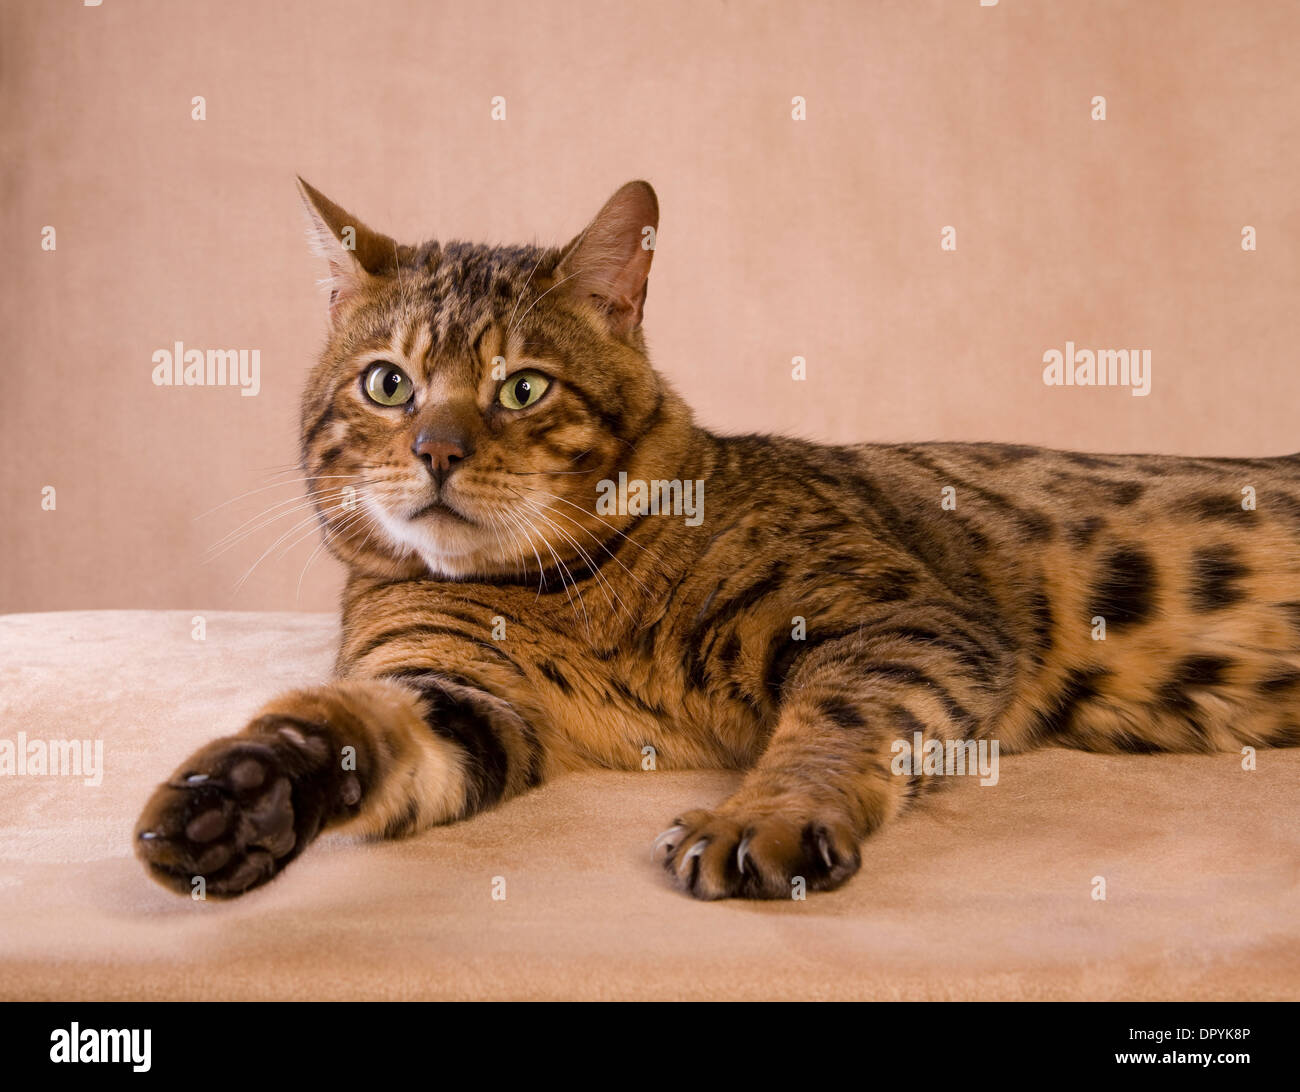 Gatto bengala sdraiato con zampa su sfondo marrone chiaro Foto Stock